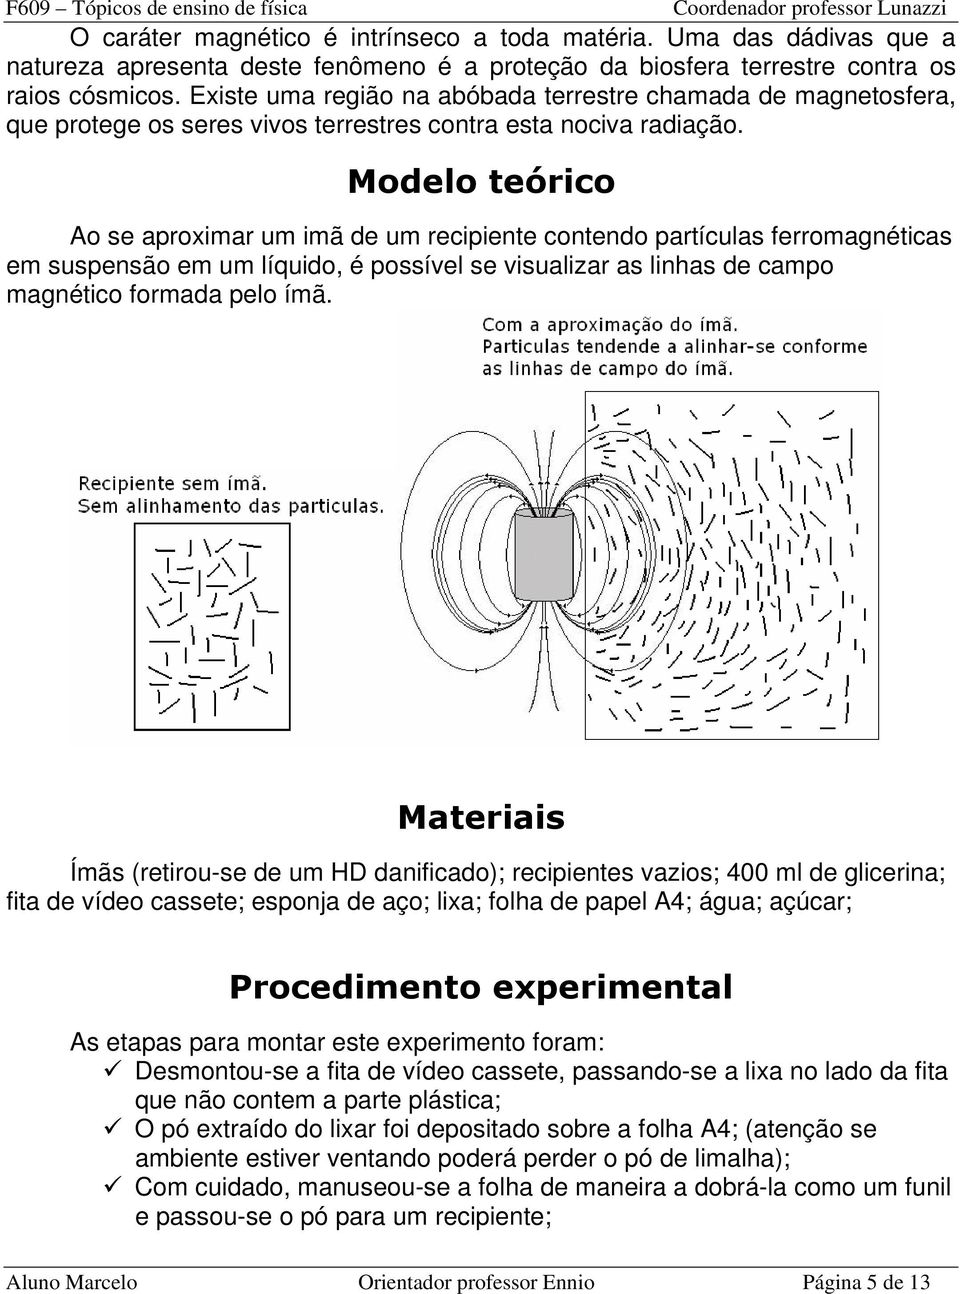 Modelo teórico Ao se aproximar um imã de um recipiente contendo partículas ferromagnéticas em suspensão em um líquido, é possível se visualizar as linhas de campo magnético formada pelo ímã.